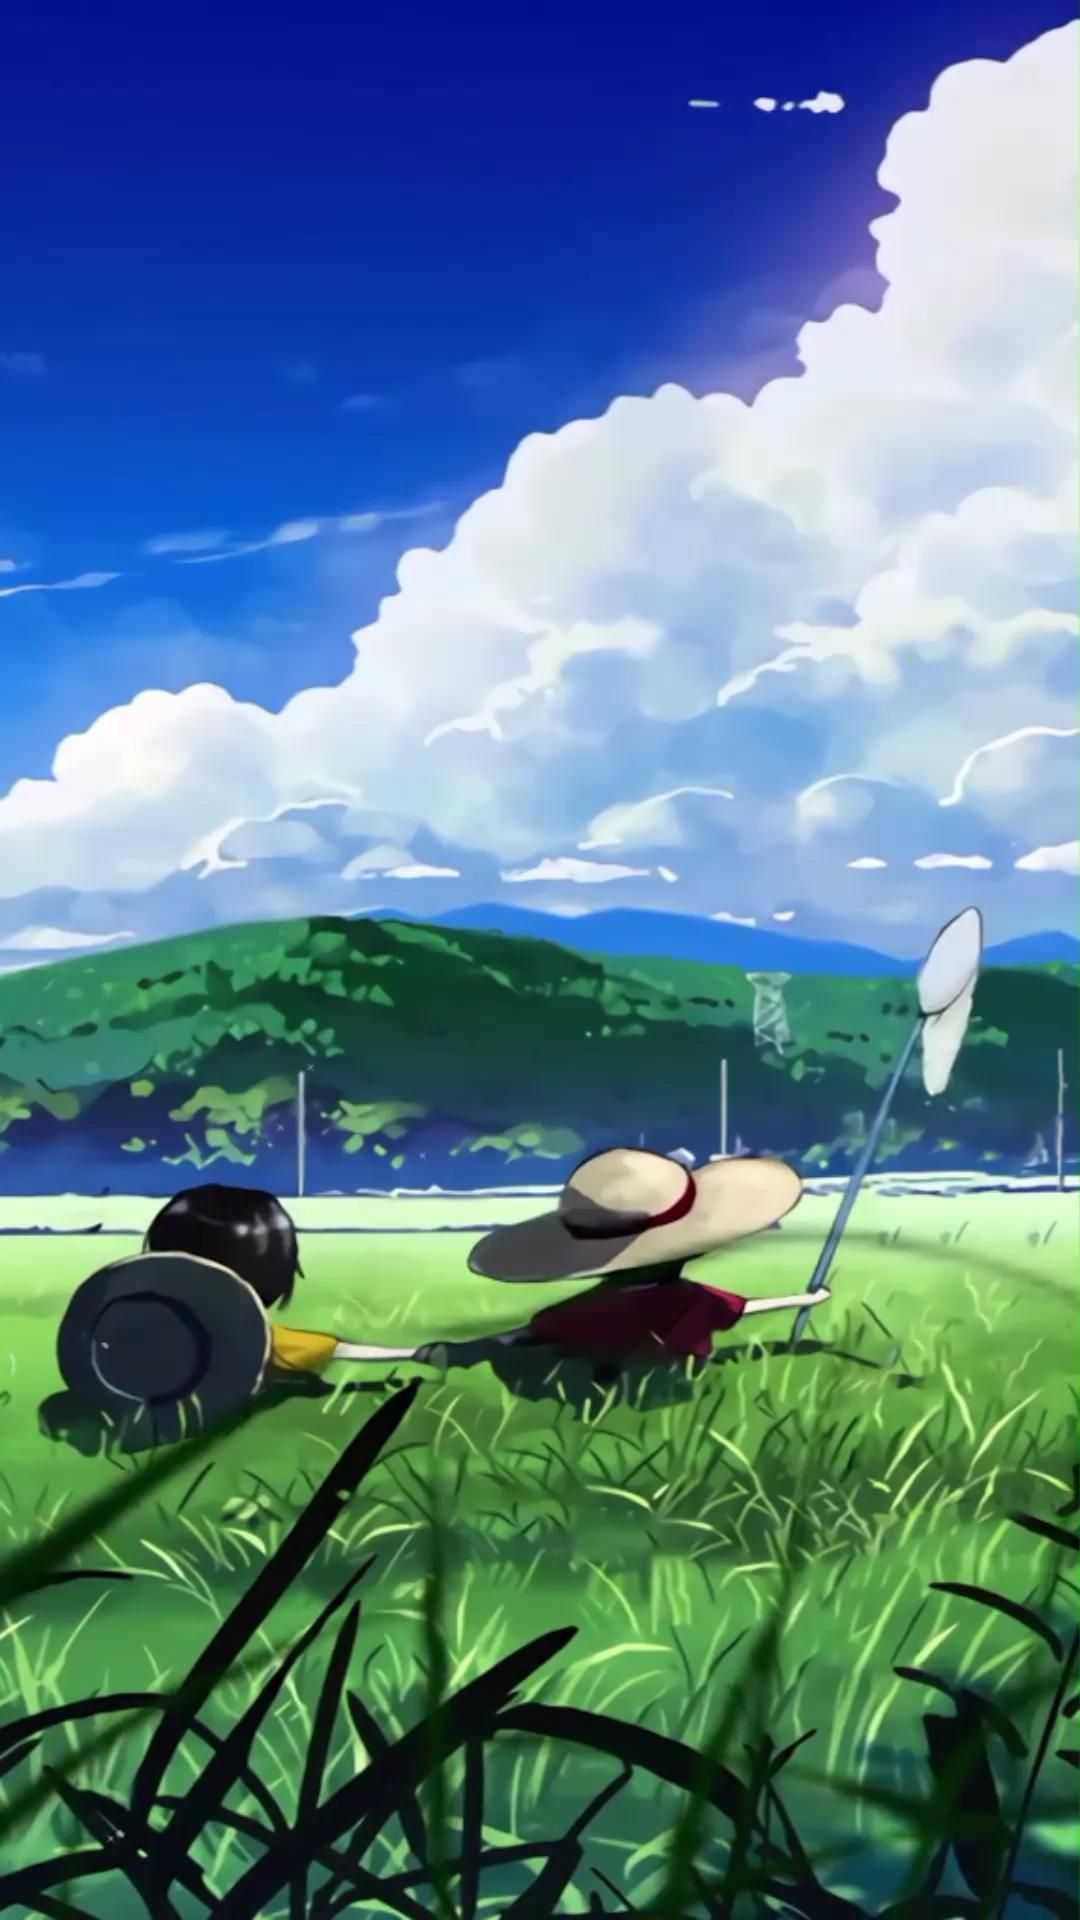 Hình nền Nền Một Cặp đôi Anime Với Mái Tóc Dài Và đôi Mắt To đang Hôn Nhau  Nền, Hình ảnh Tình Yêu Anime, động Vật, đáng Yêu Background Vector để tải